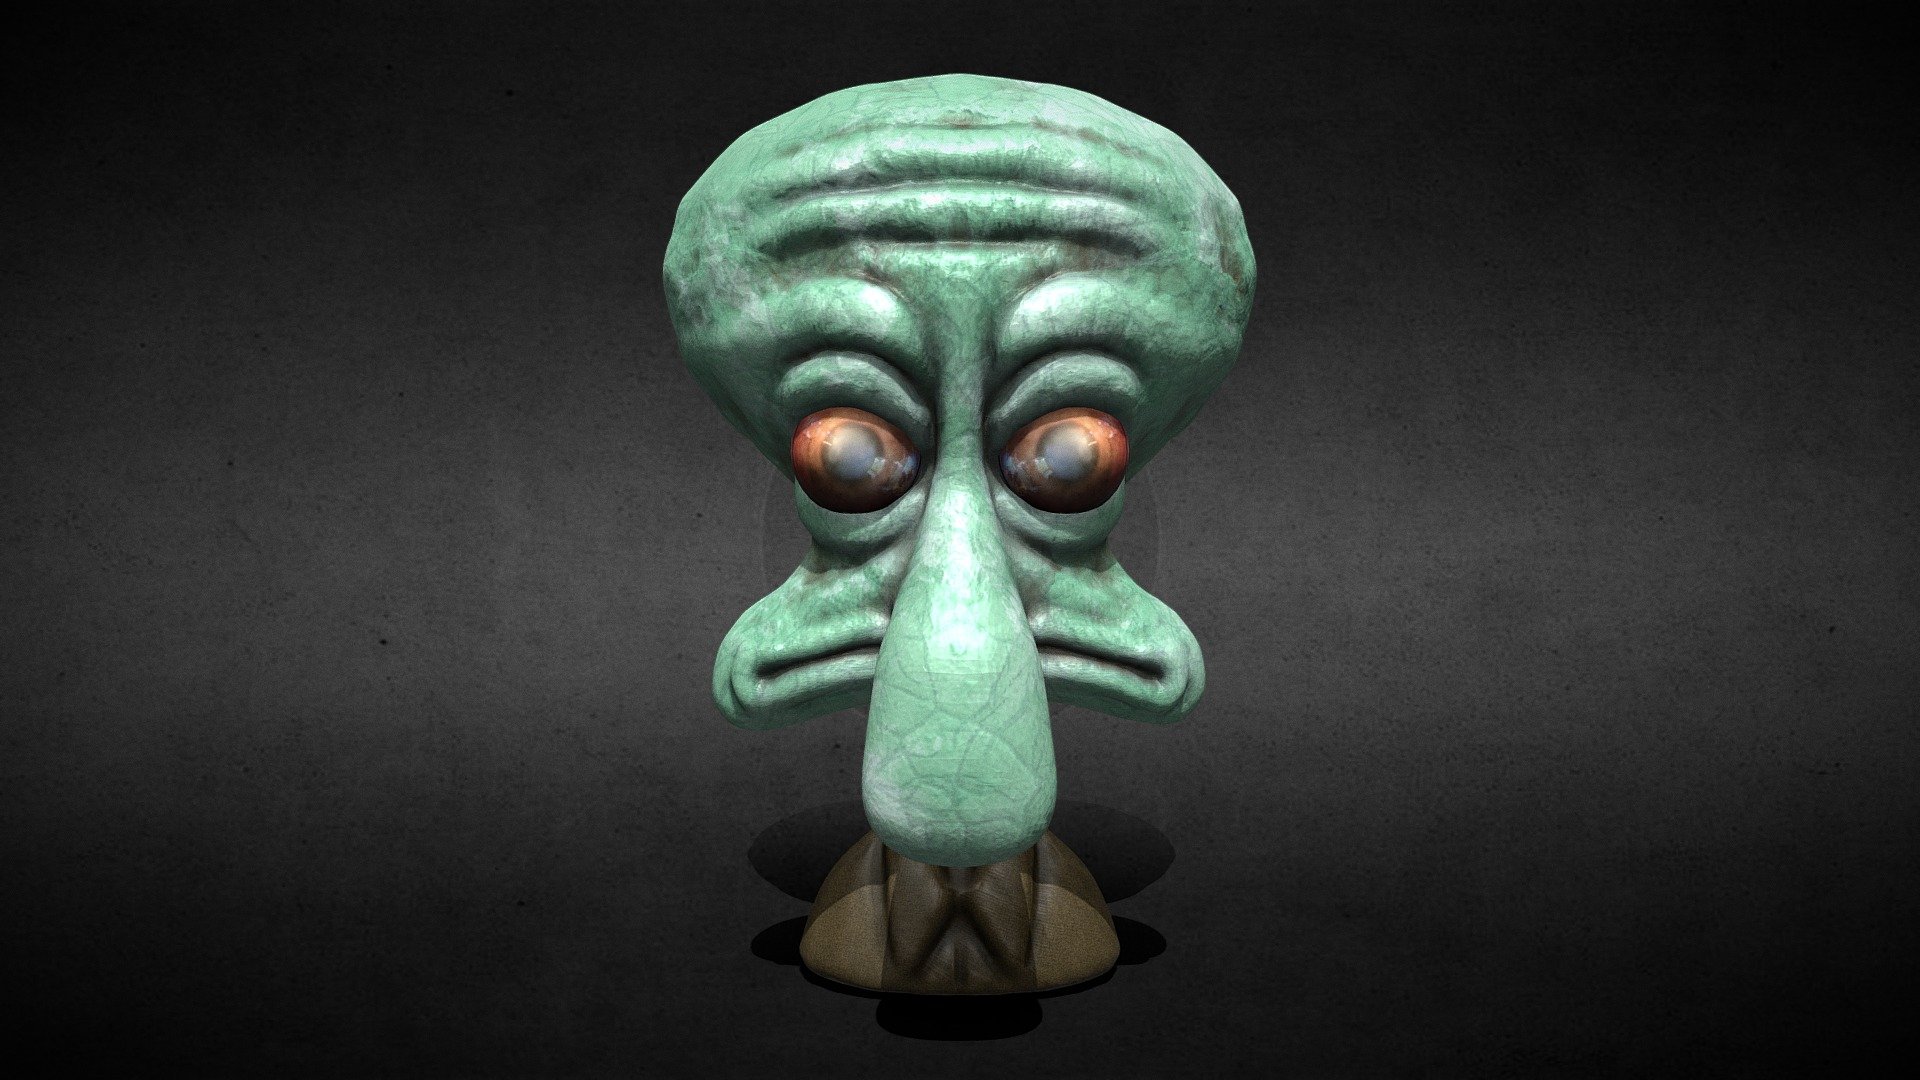 Day 27 - Dead Eyes
the sea is dead  

@sculptjanuary - Day 27 - Dead Eyes - Buy Royalty Free 3D model by 3DGuimaraes 3d model